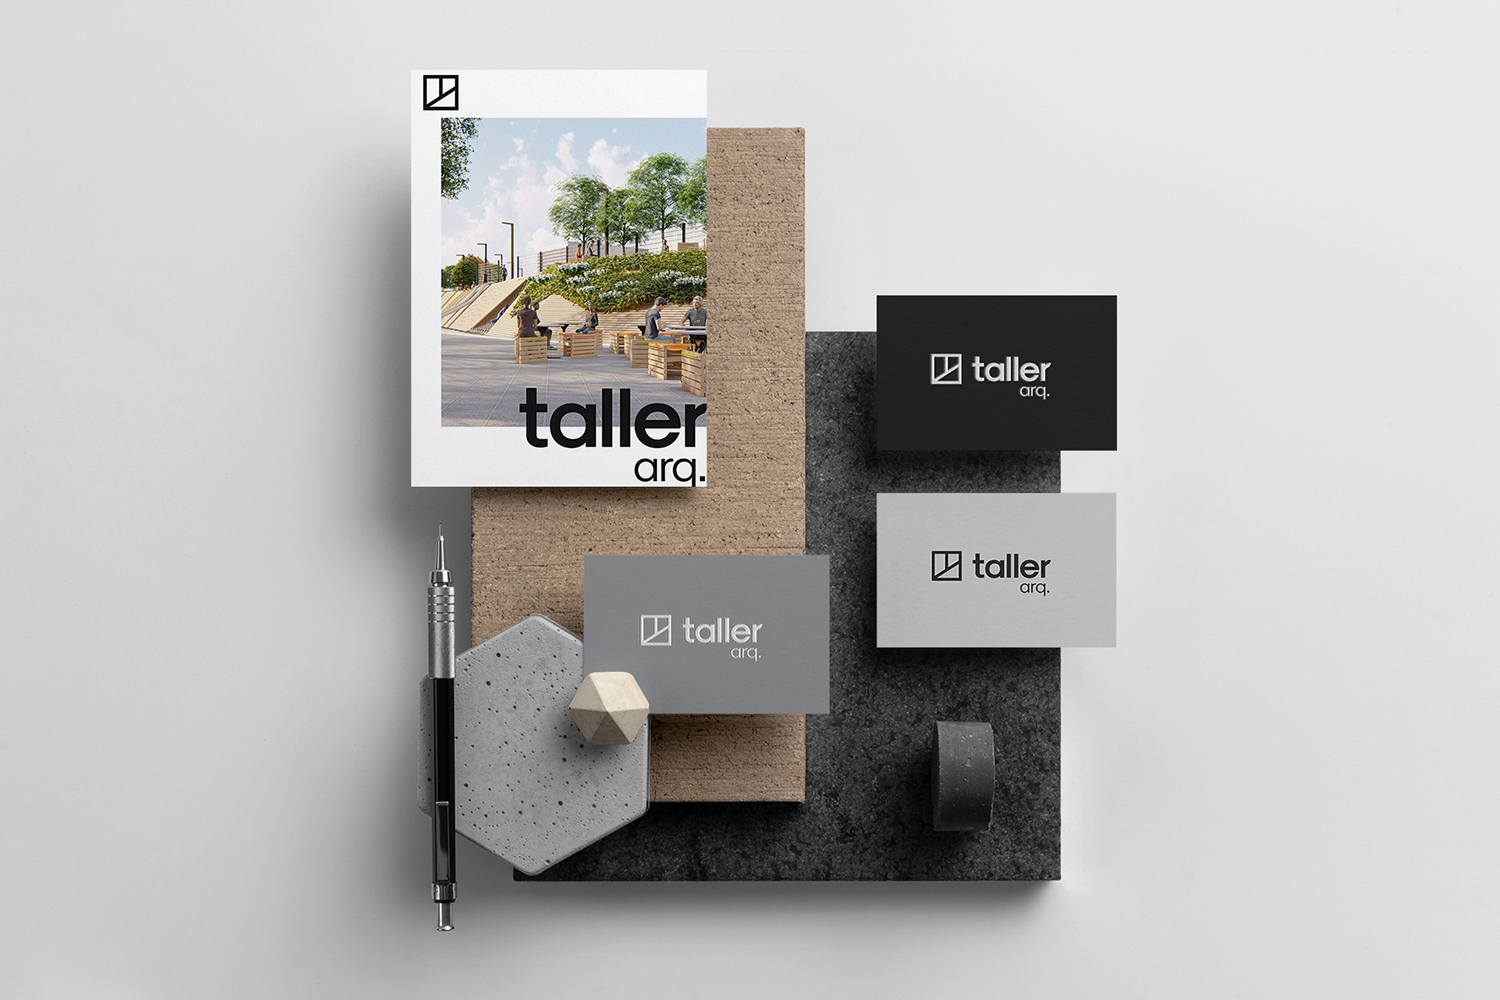 Taller Arq. Brand Identity Created by Gabriela Dall’Agnol